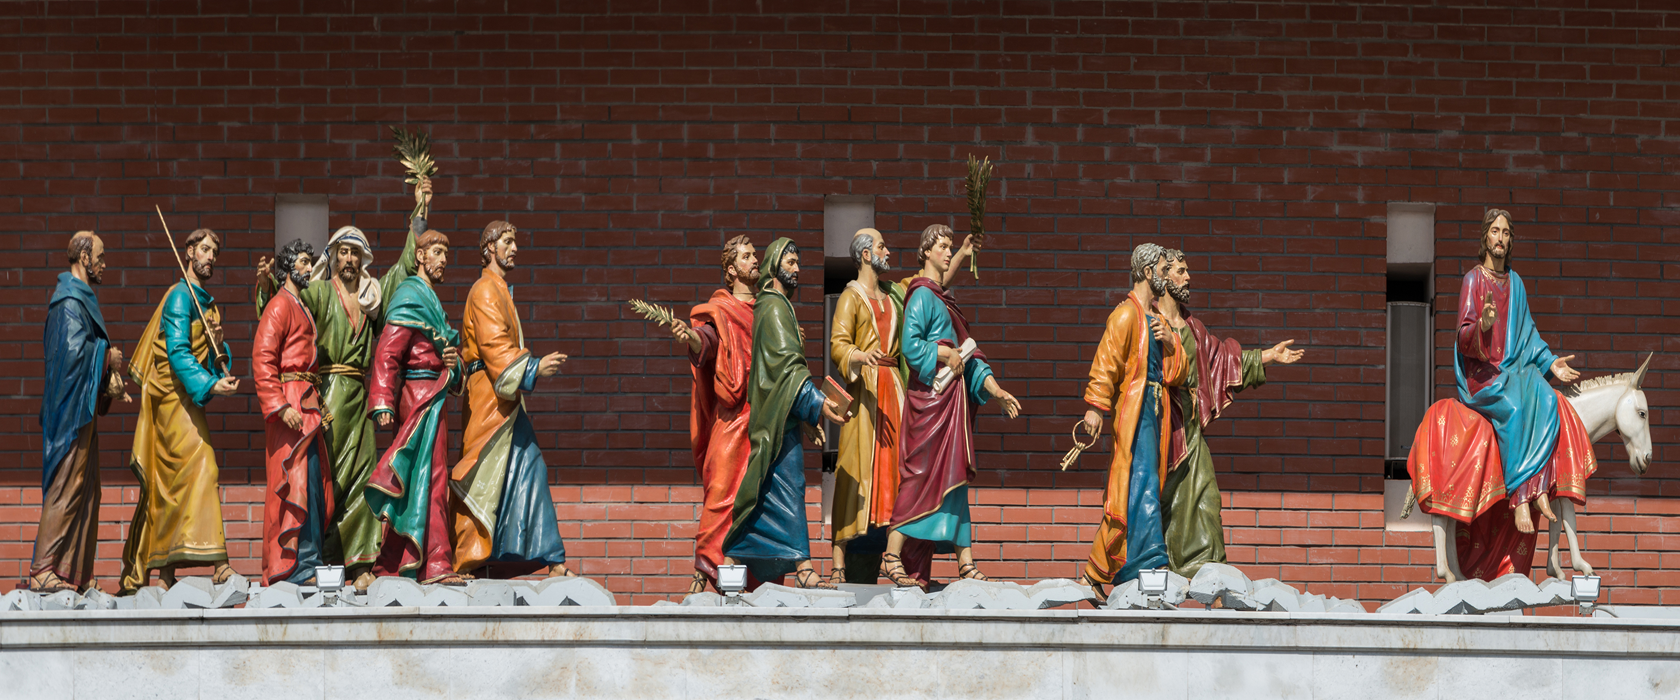 Динамическая скульптурная композиция "Вход Господень в Иерусалим"